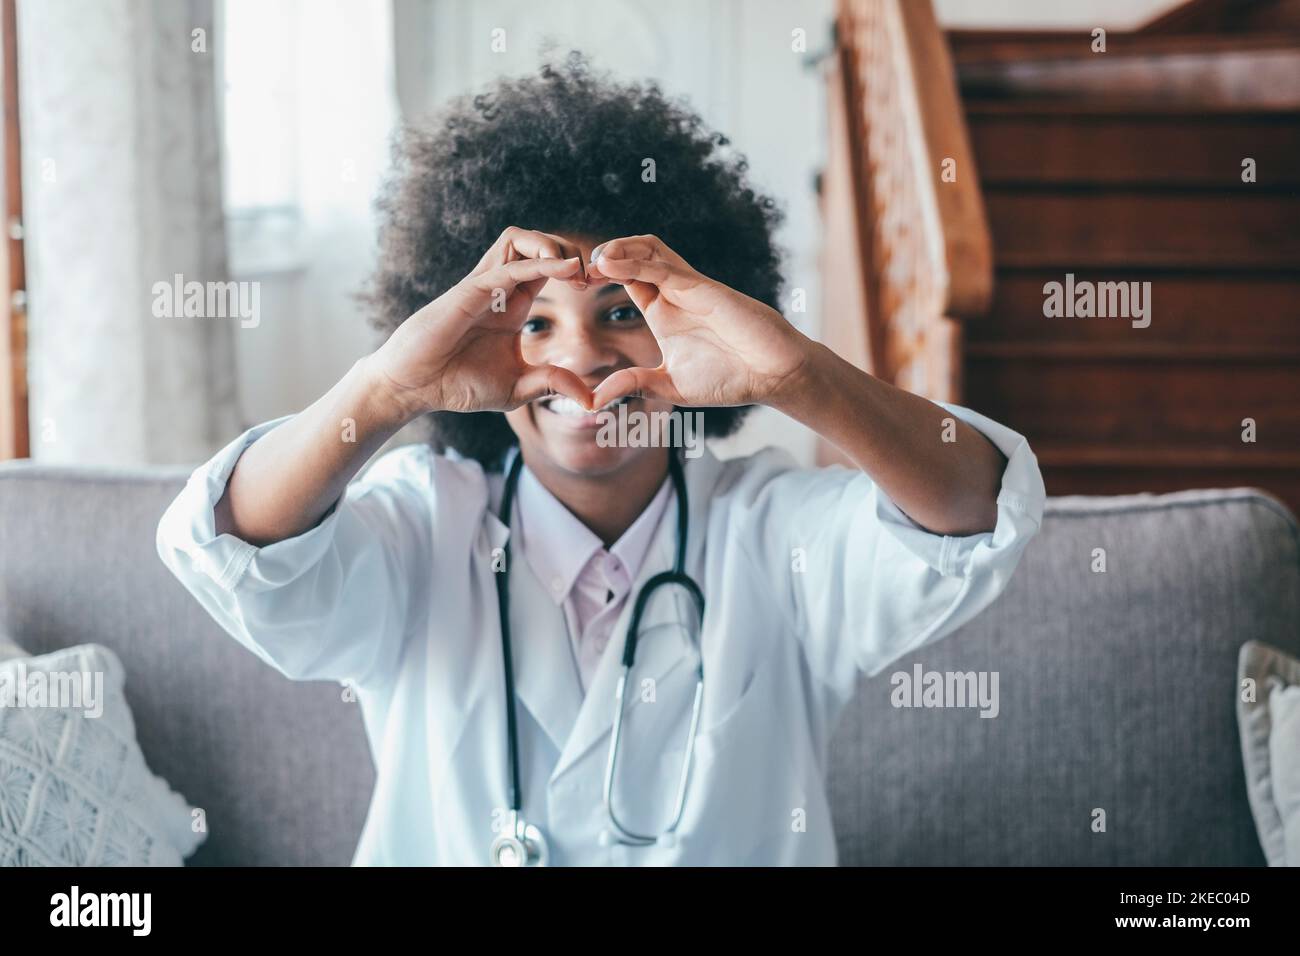 Ärztin macht eine Geste der Herzform mit den Händen. Lächelnde schwarze Ärztin, die mit ihren Händen ein Liebessymbol macht. Mitarbeiter im Gesundheitswesen, der den Patienten Liebe und Unterstützung gibt Stockfoto